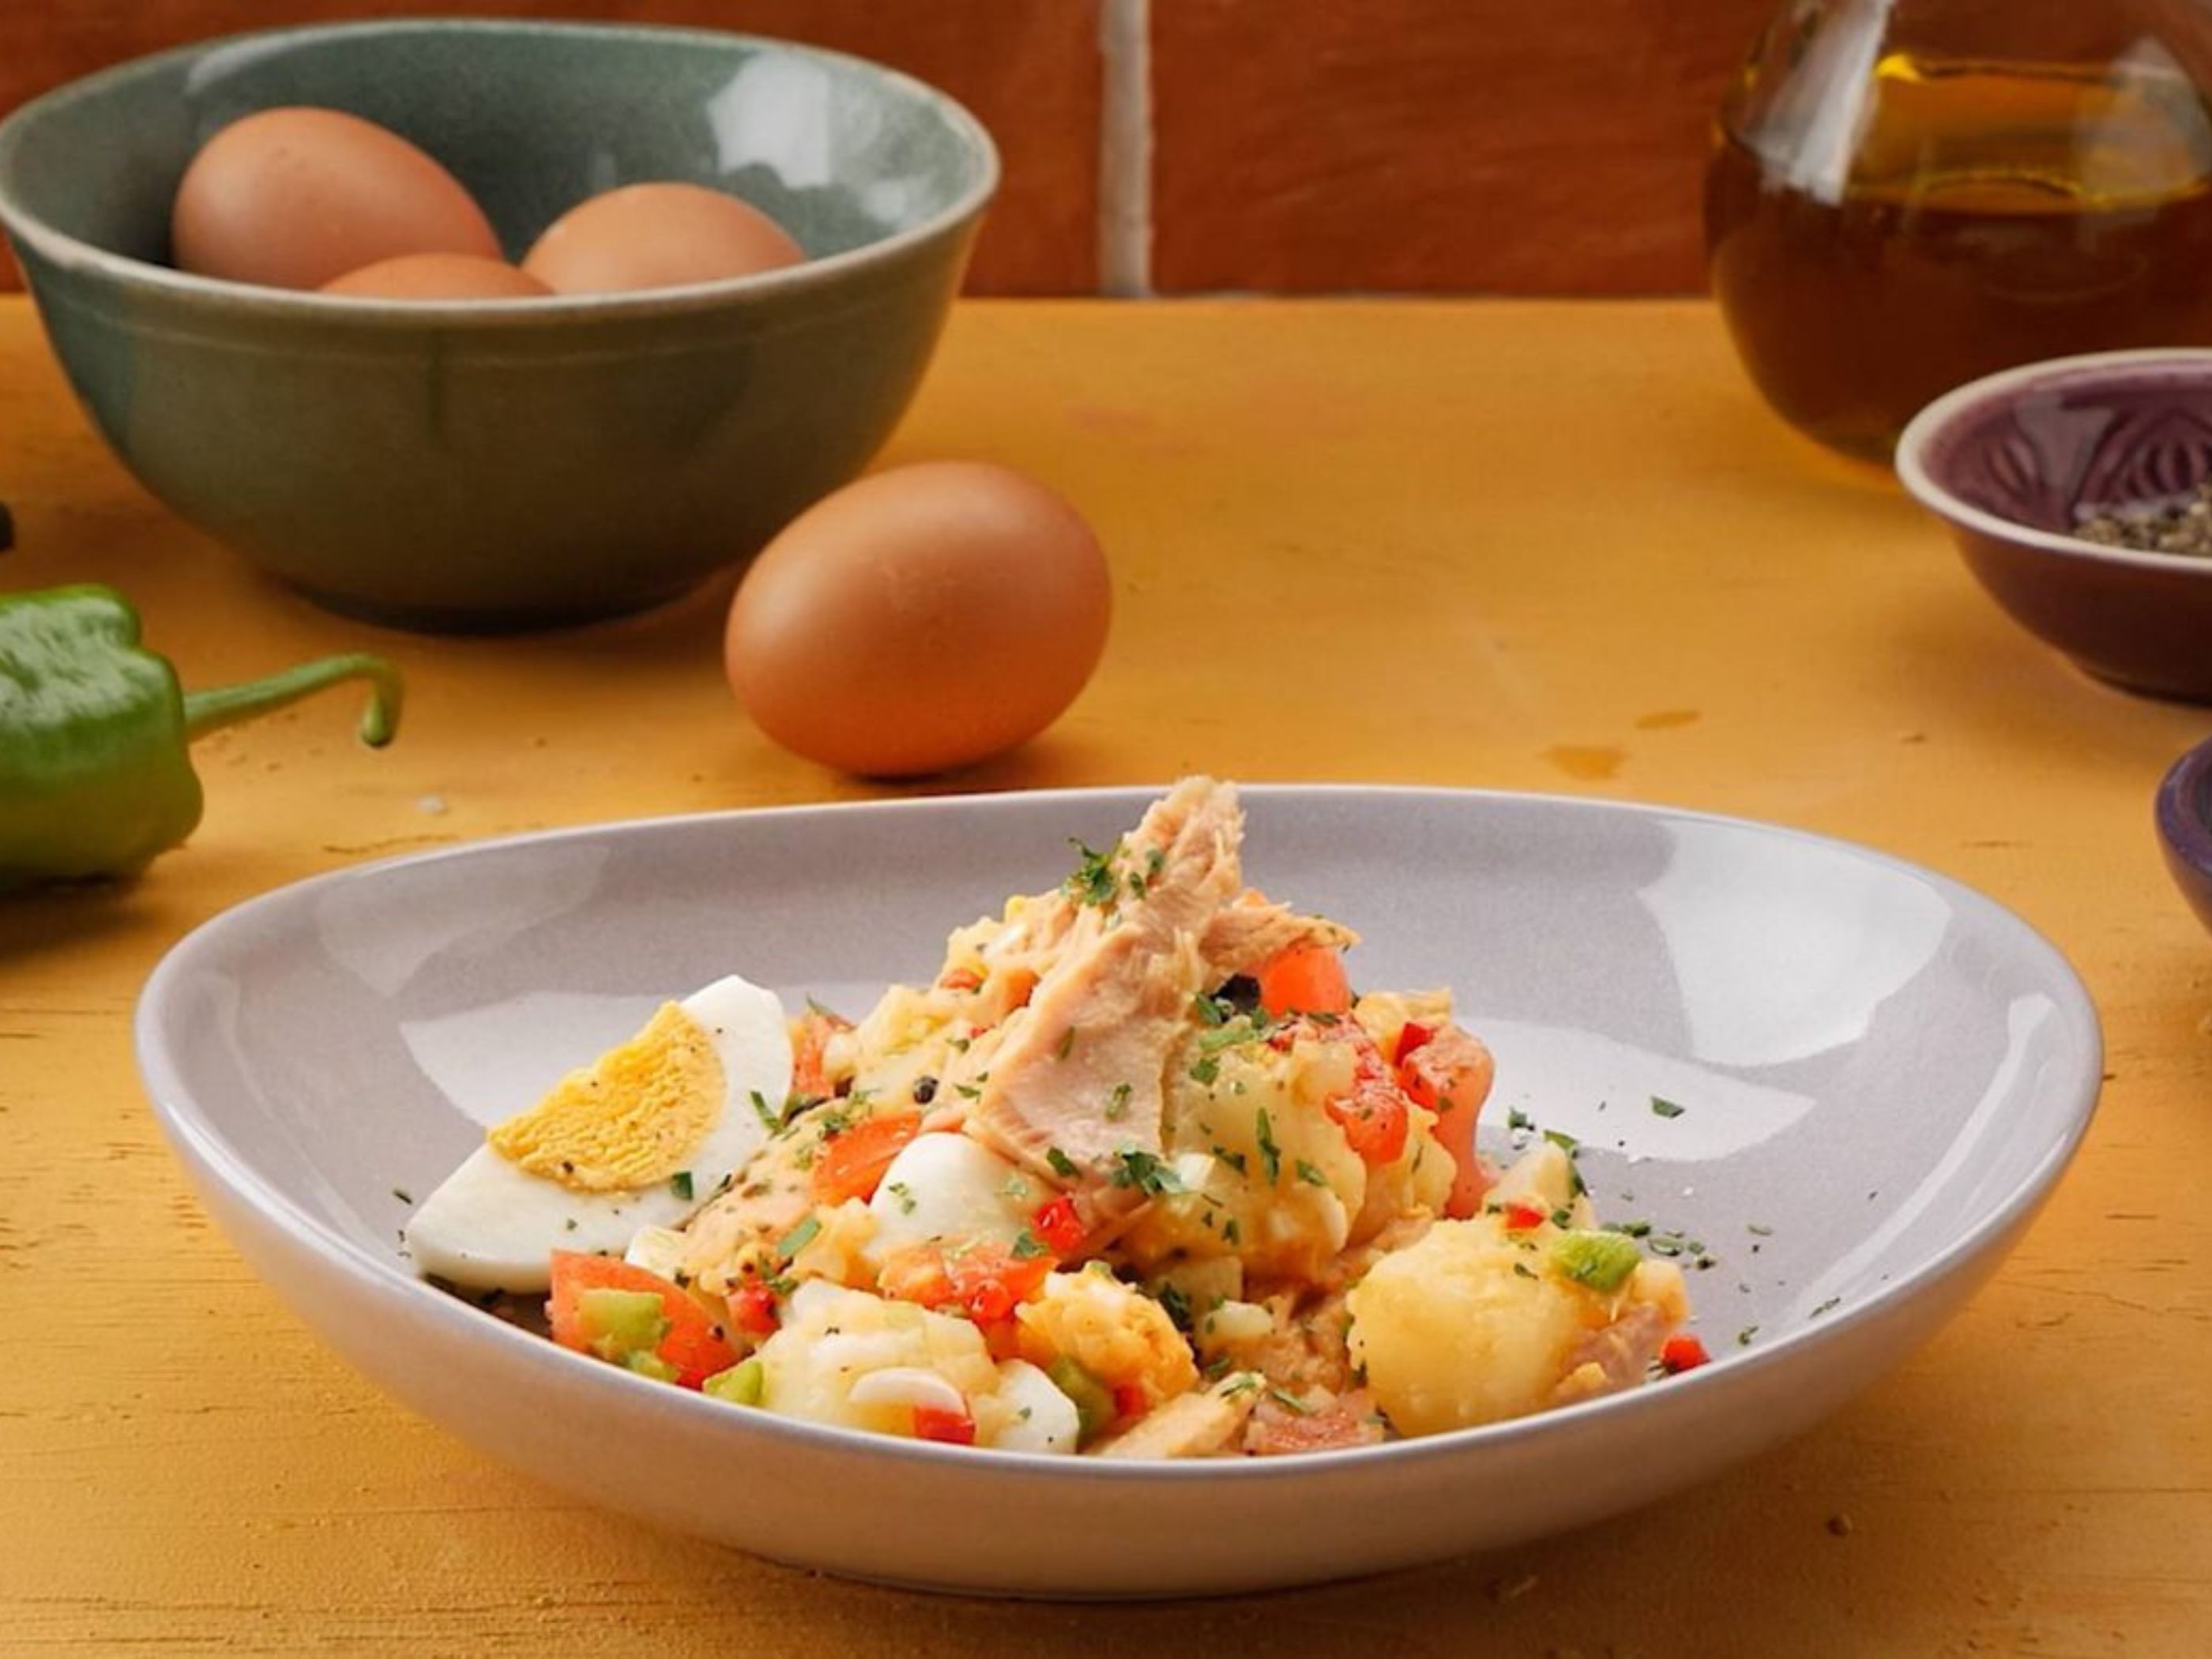 https://www.aldi.es/content/dam/aldi/spain/inspiracion/inspirate/ideas/como-hacer-huevos-cocidos-microondas/receta-ensalada-campera-aldi.jpg